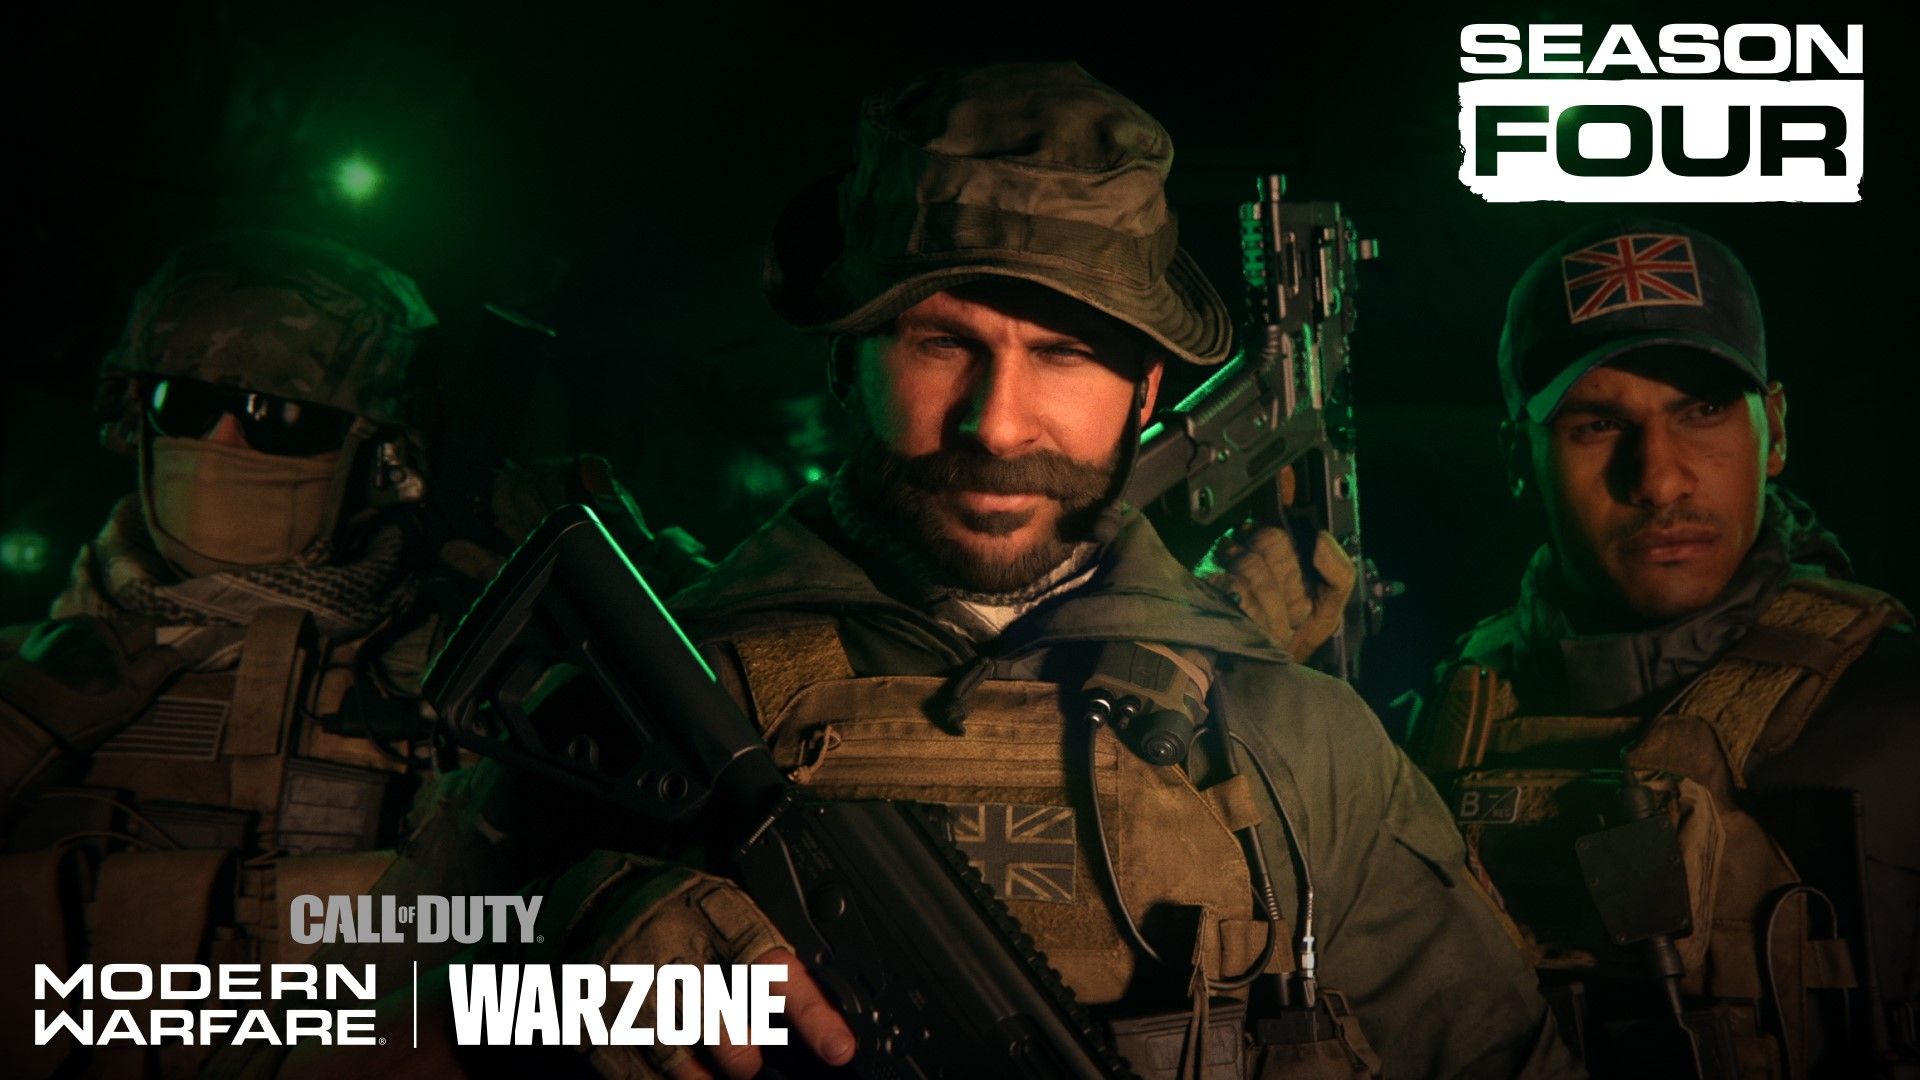 Call of Duty®: Modern Warfare® Story So Far